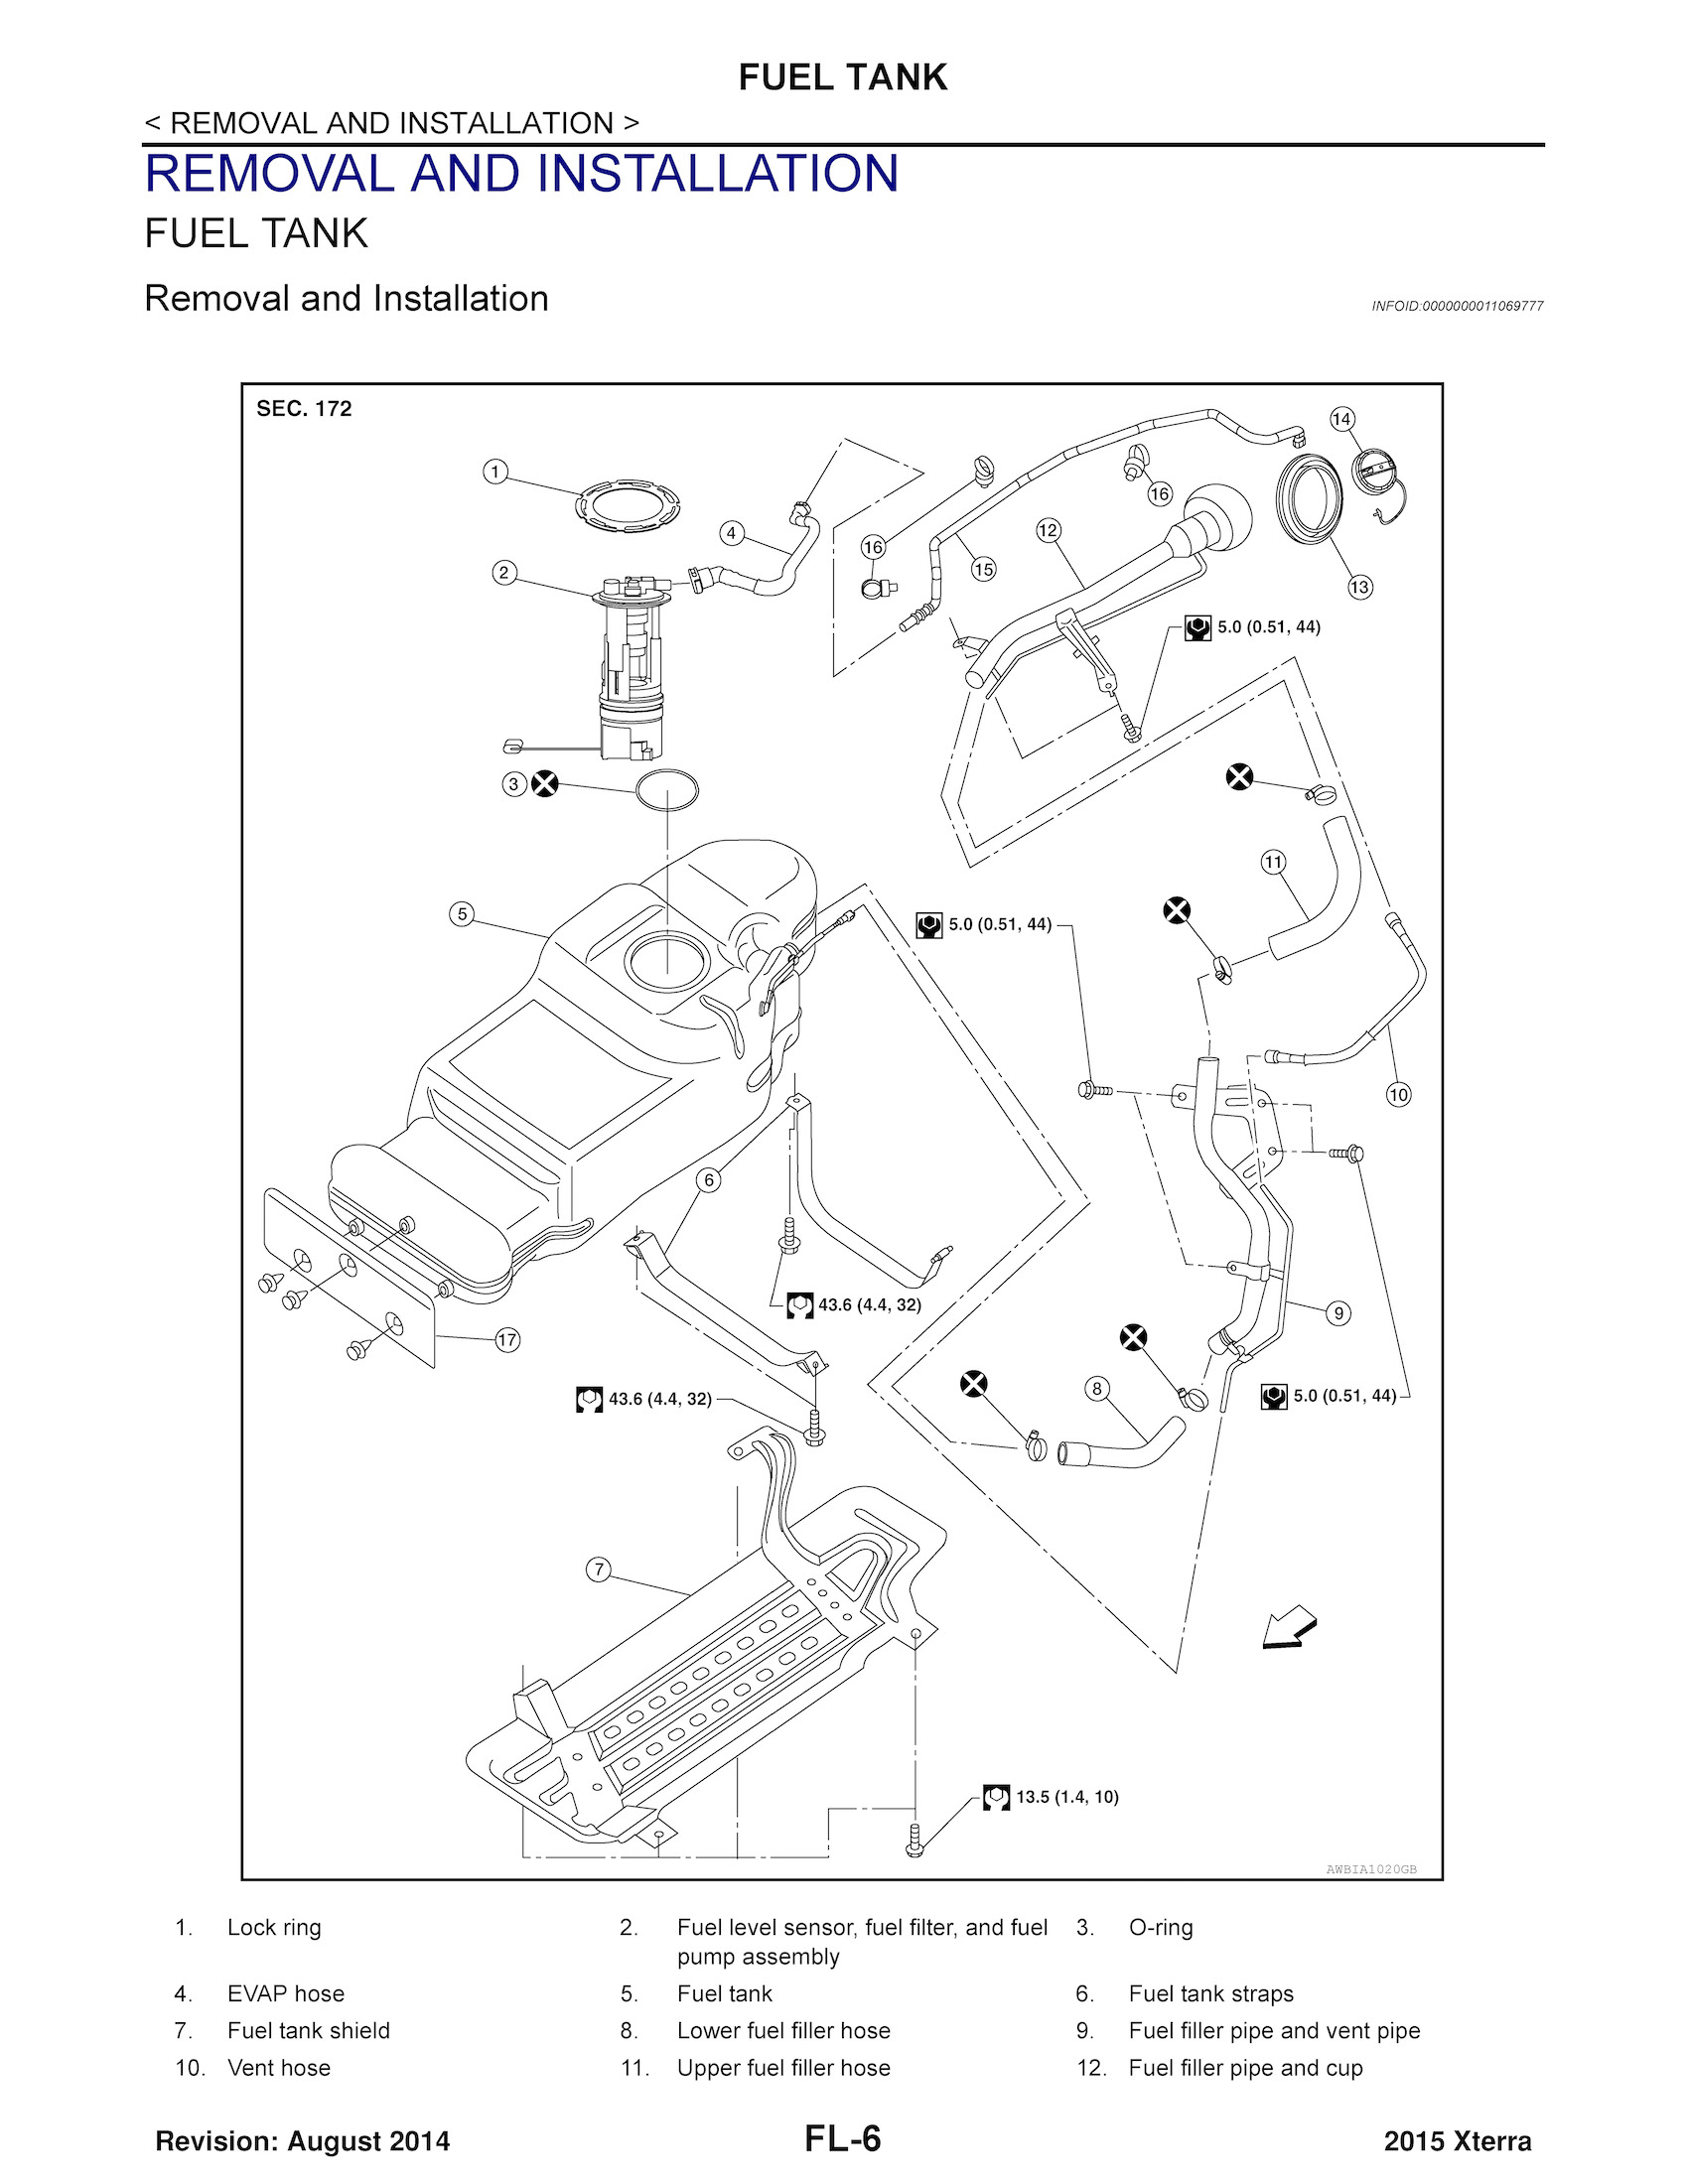 Download 2015 Nissan XTerra Service Repair Manual.